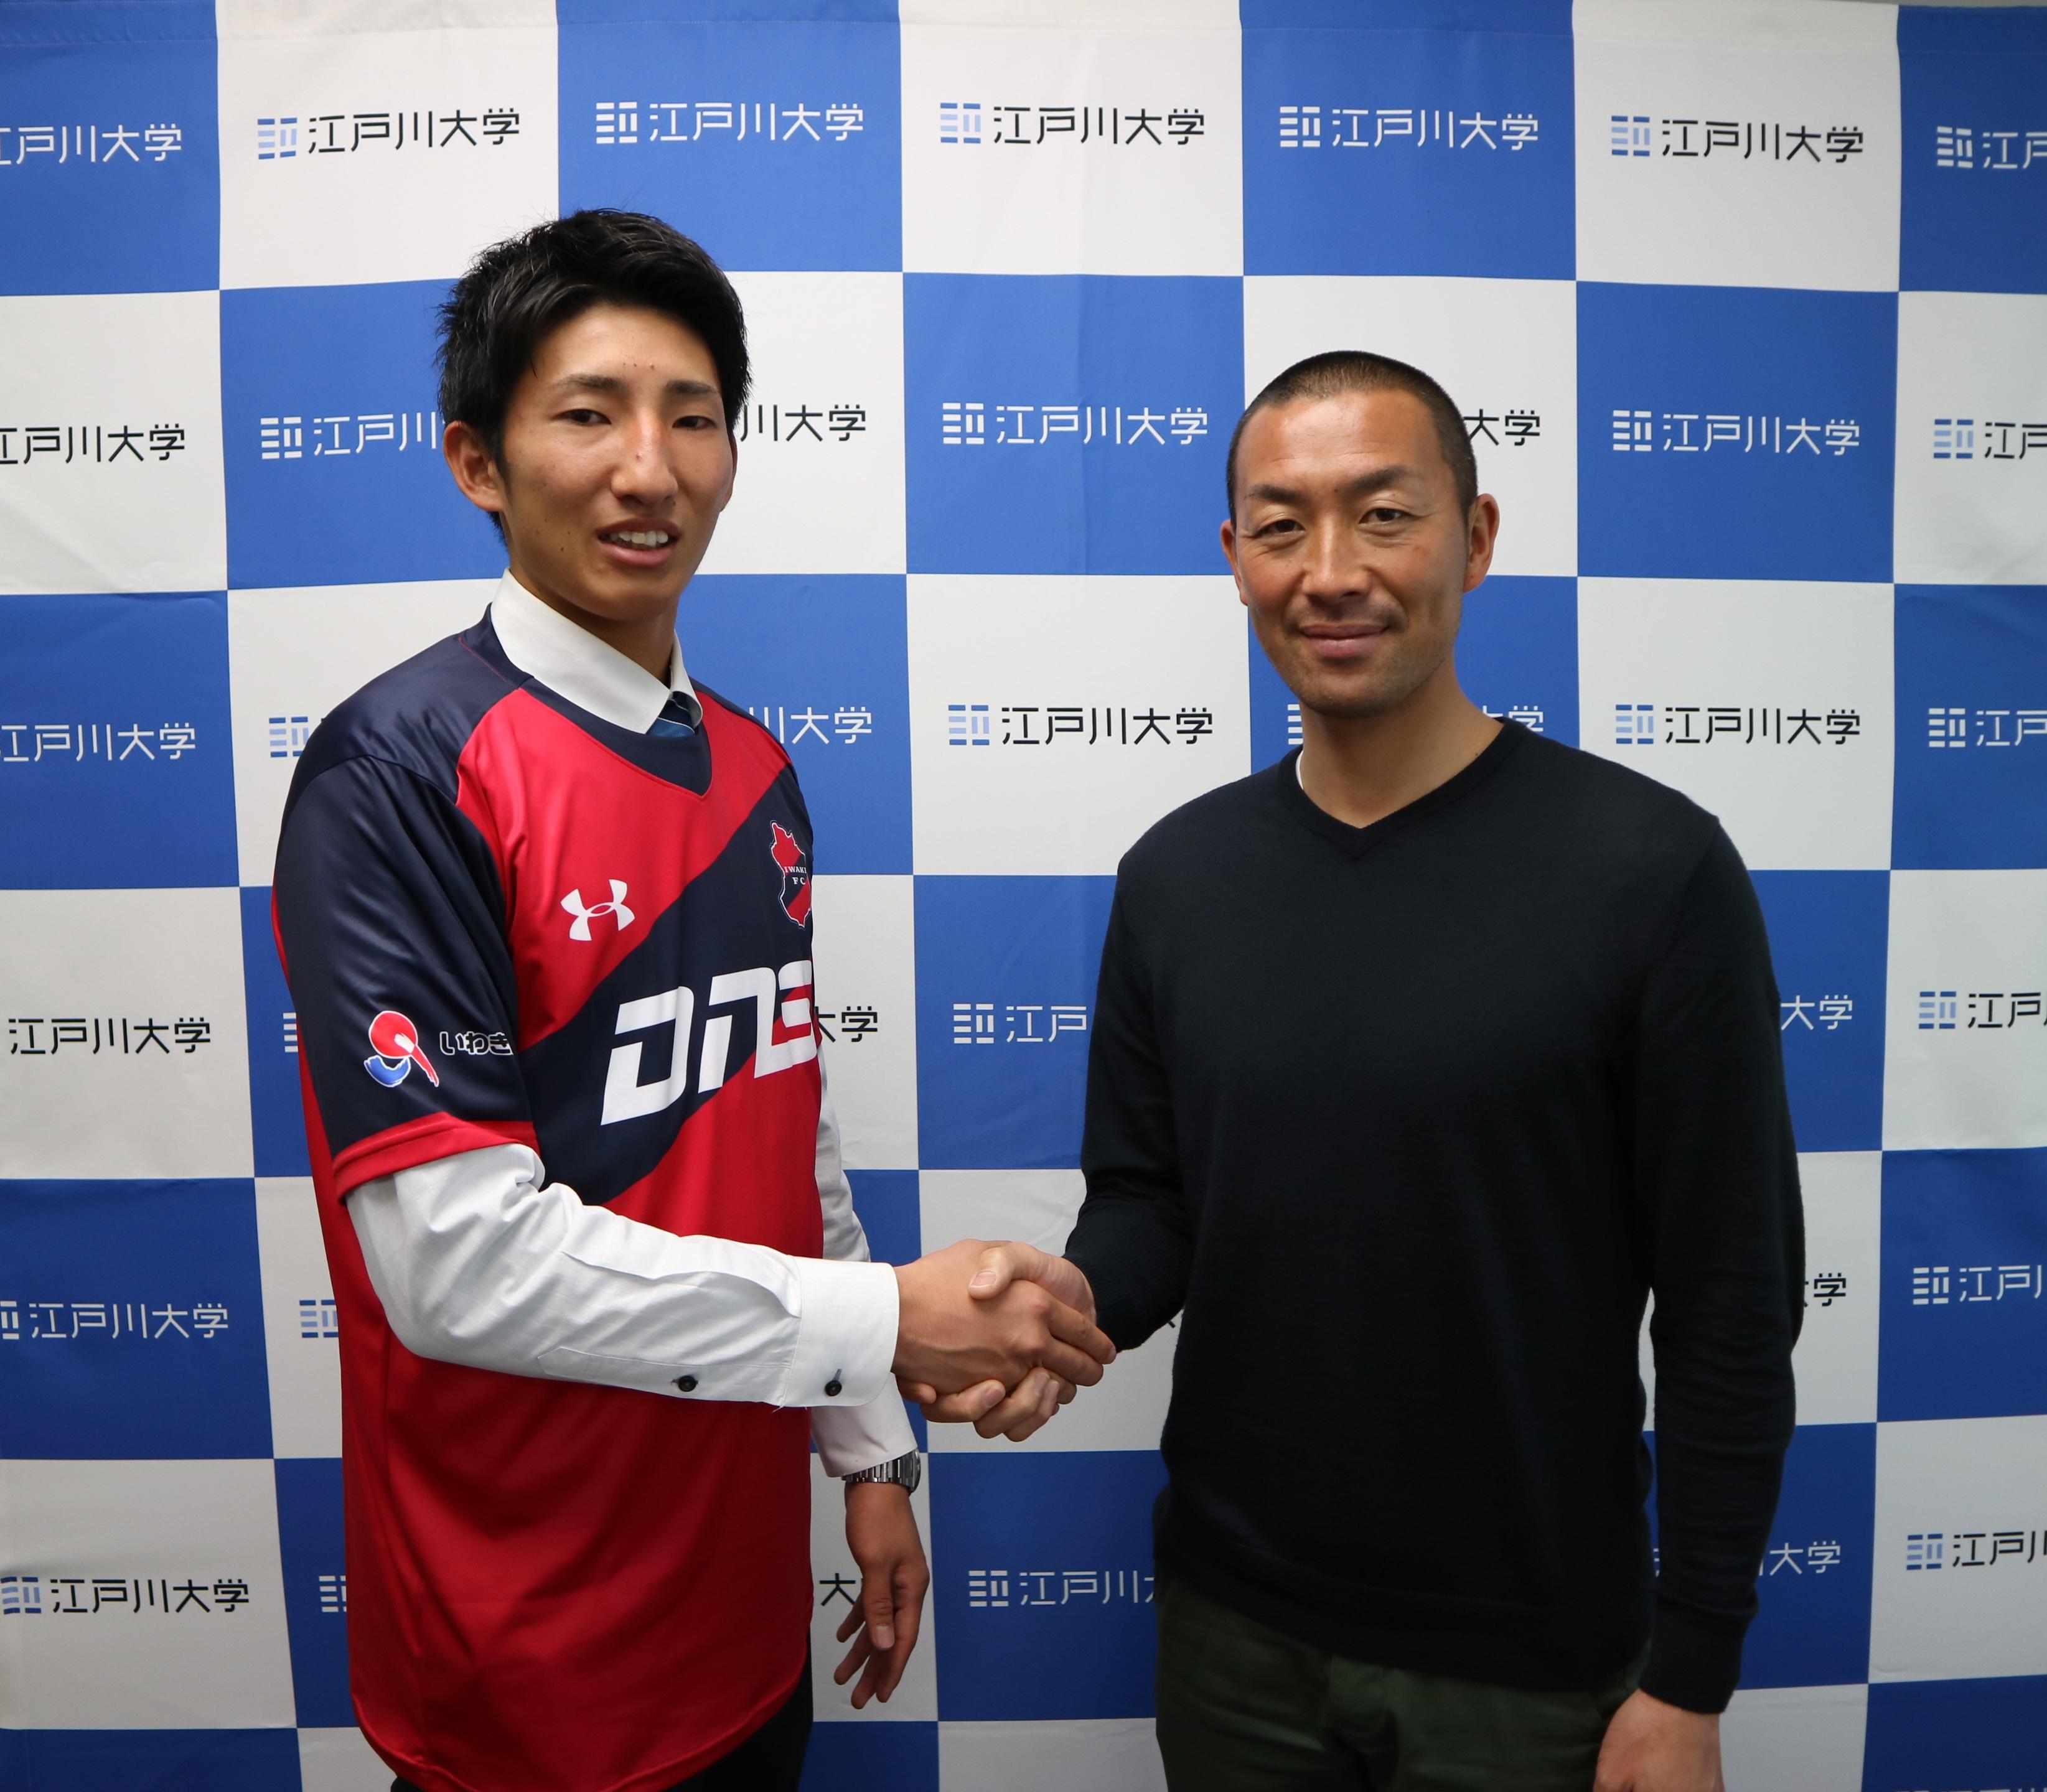 江戸川大学フットボールクラブの赤星魁麻選手が社会人サッカークラブ「いわきFC」に加入